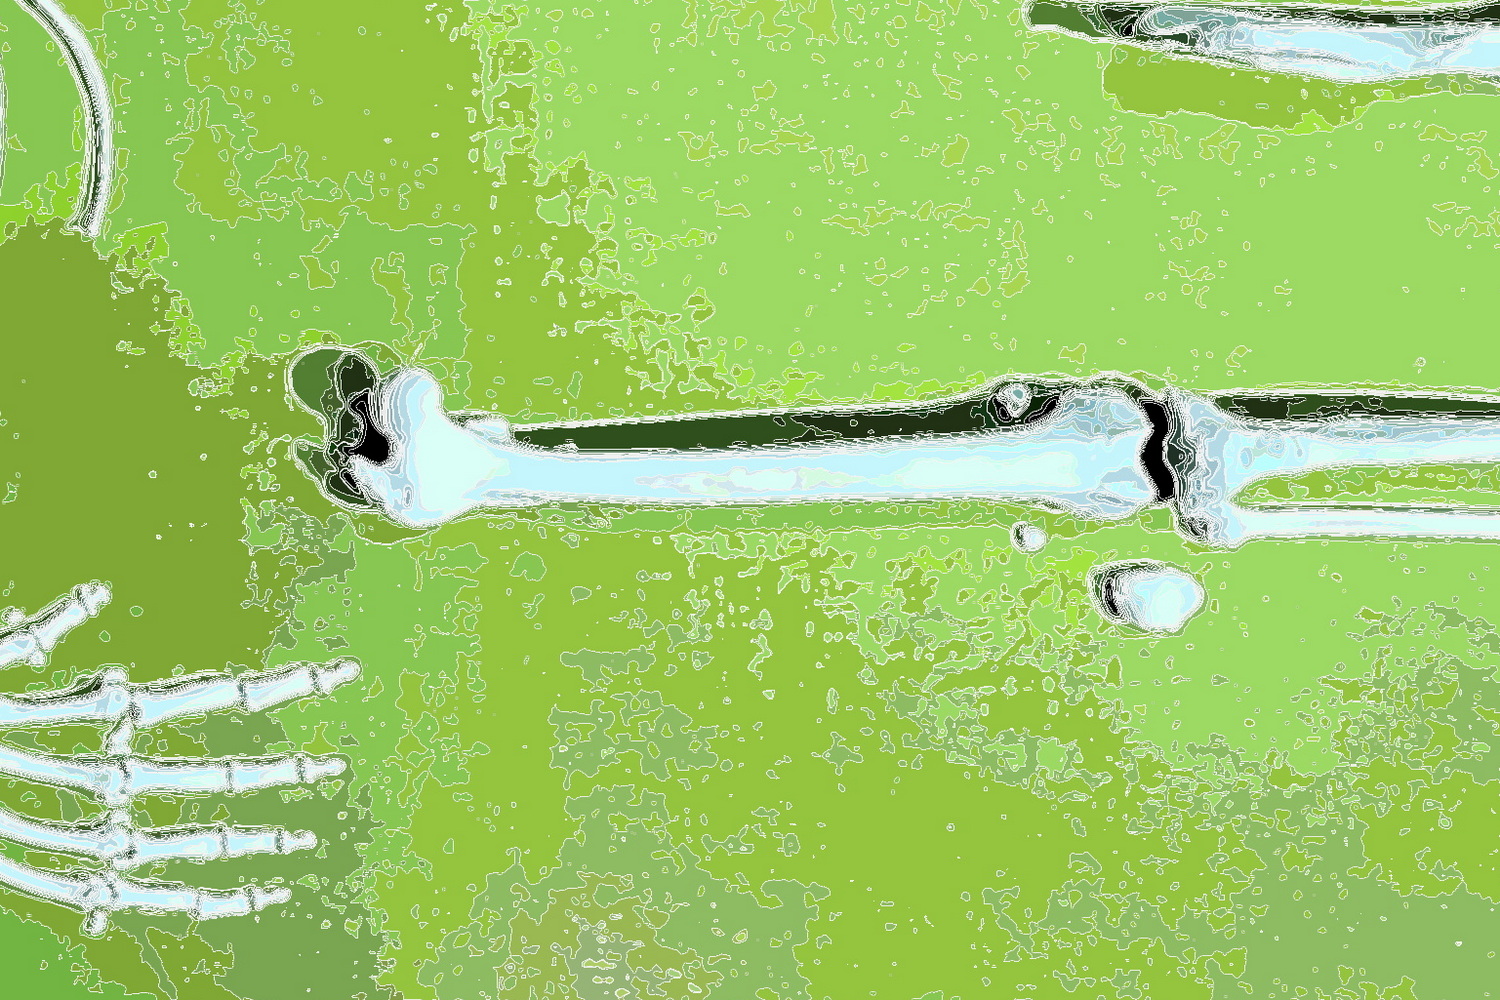 Bones lying in a meadow